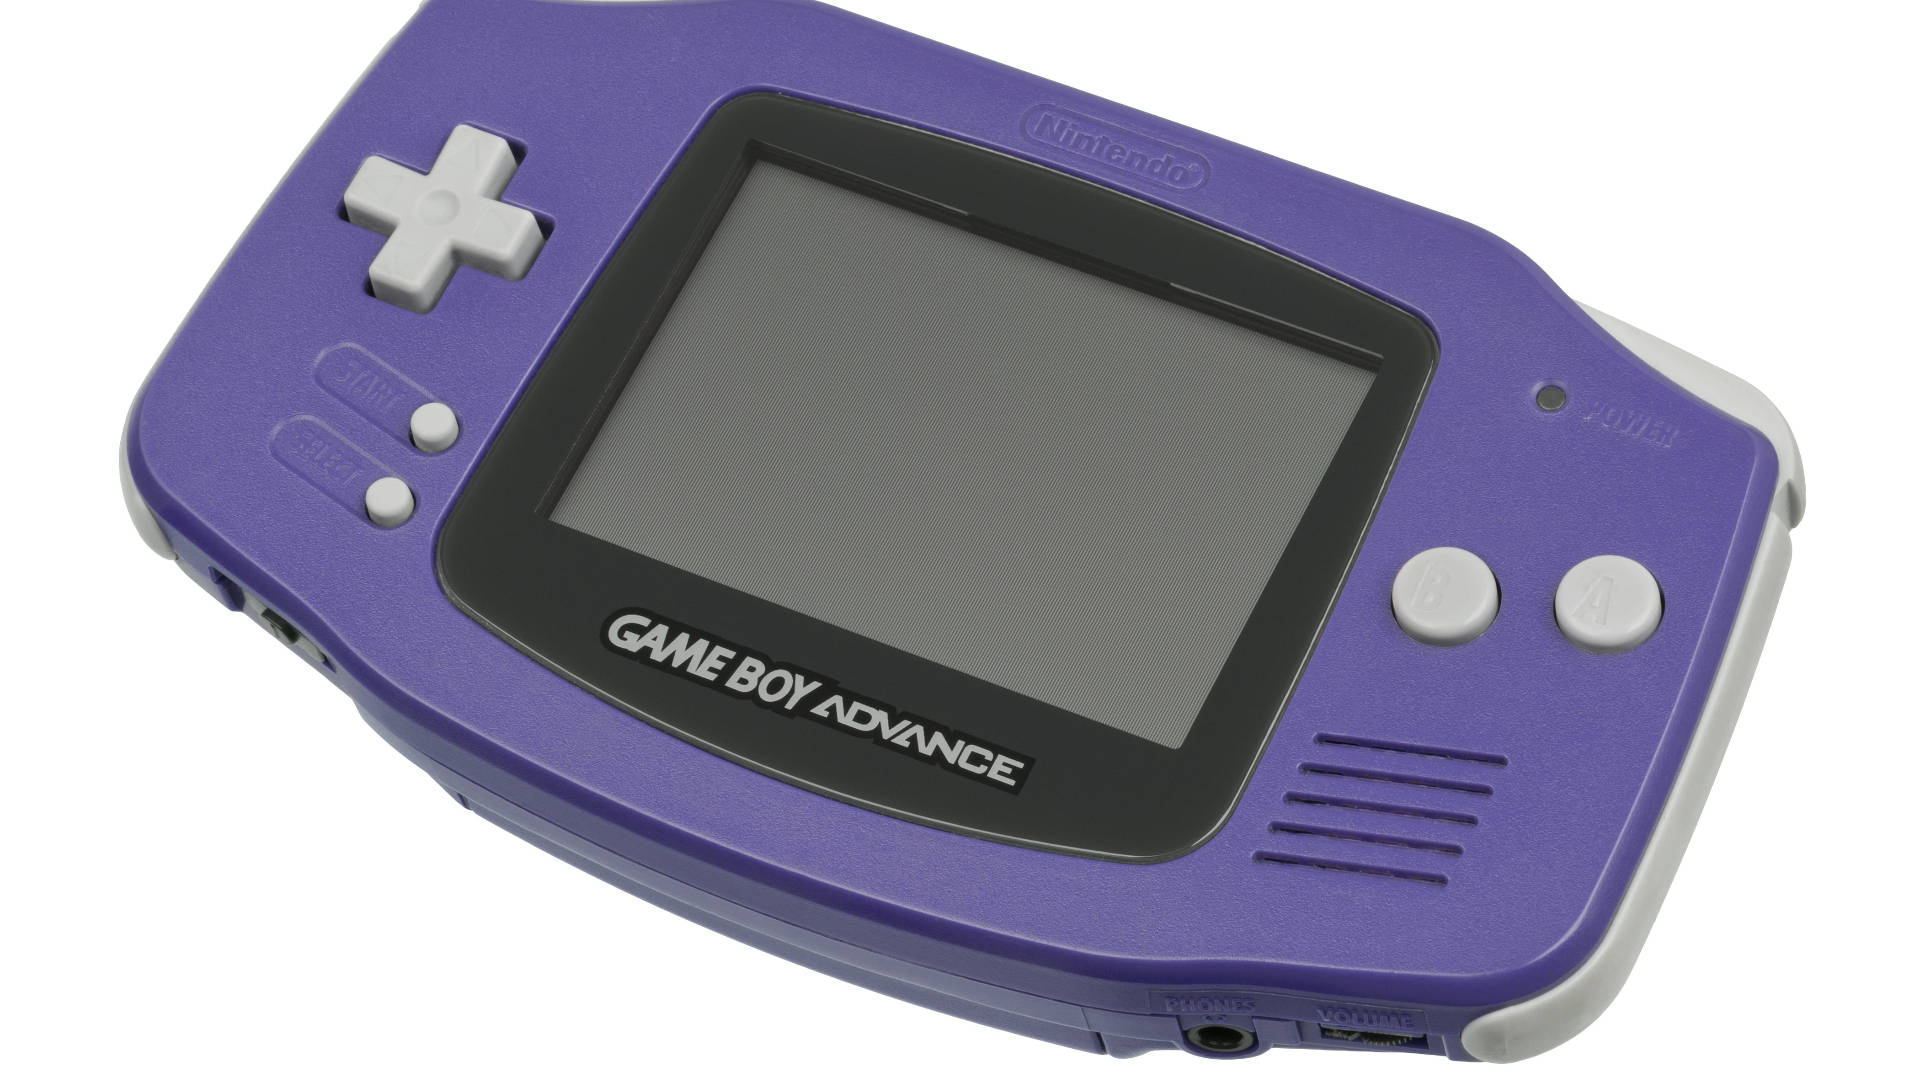 Purple Nintendo Game Boy Advance